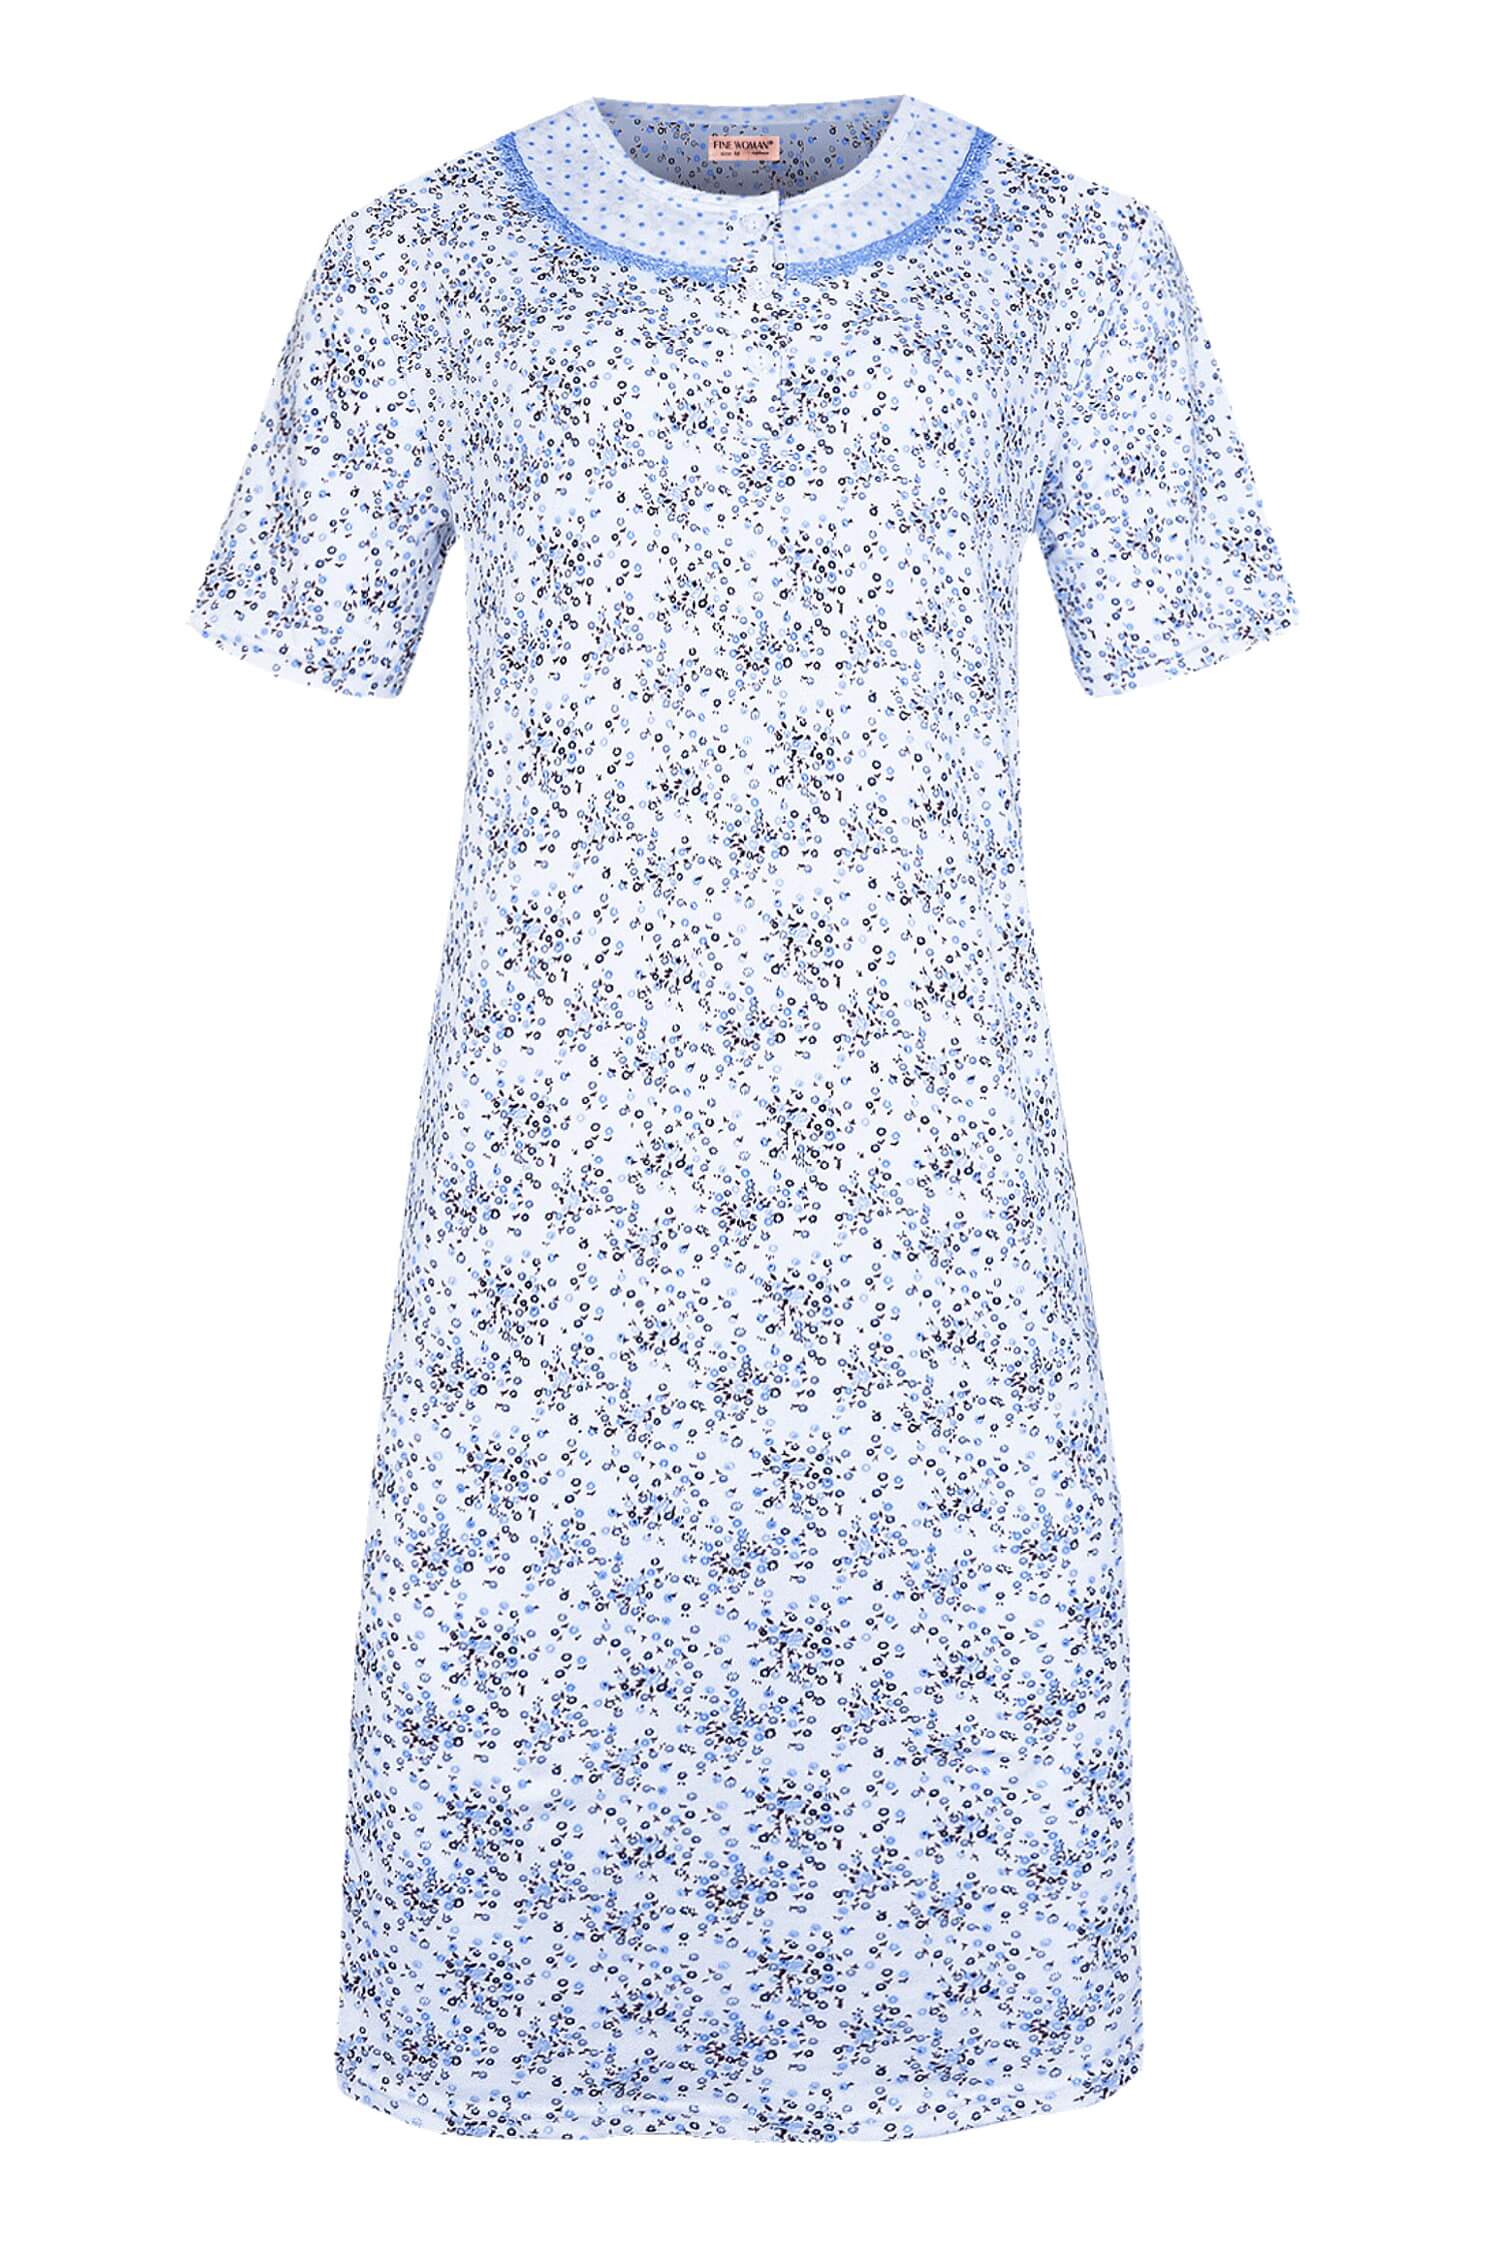 Andělka dámská noční košile krátký rukáv 6530 XL světle modrá